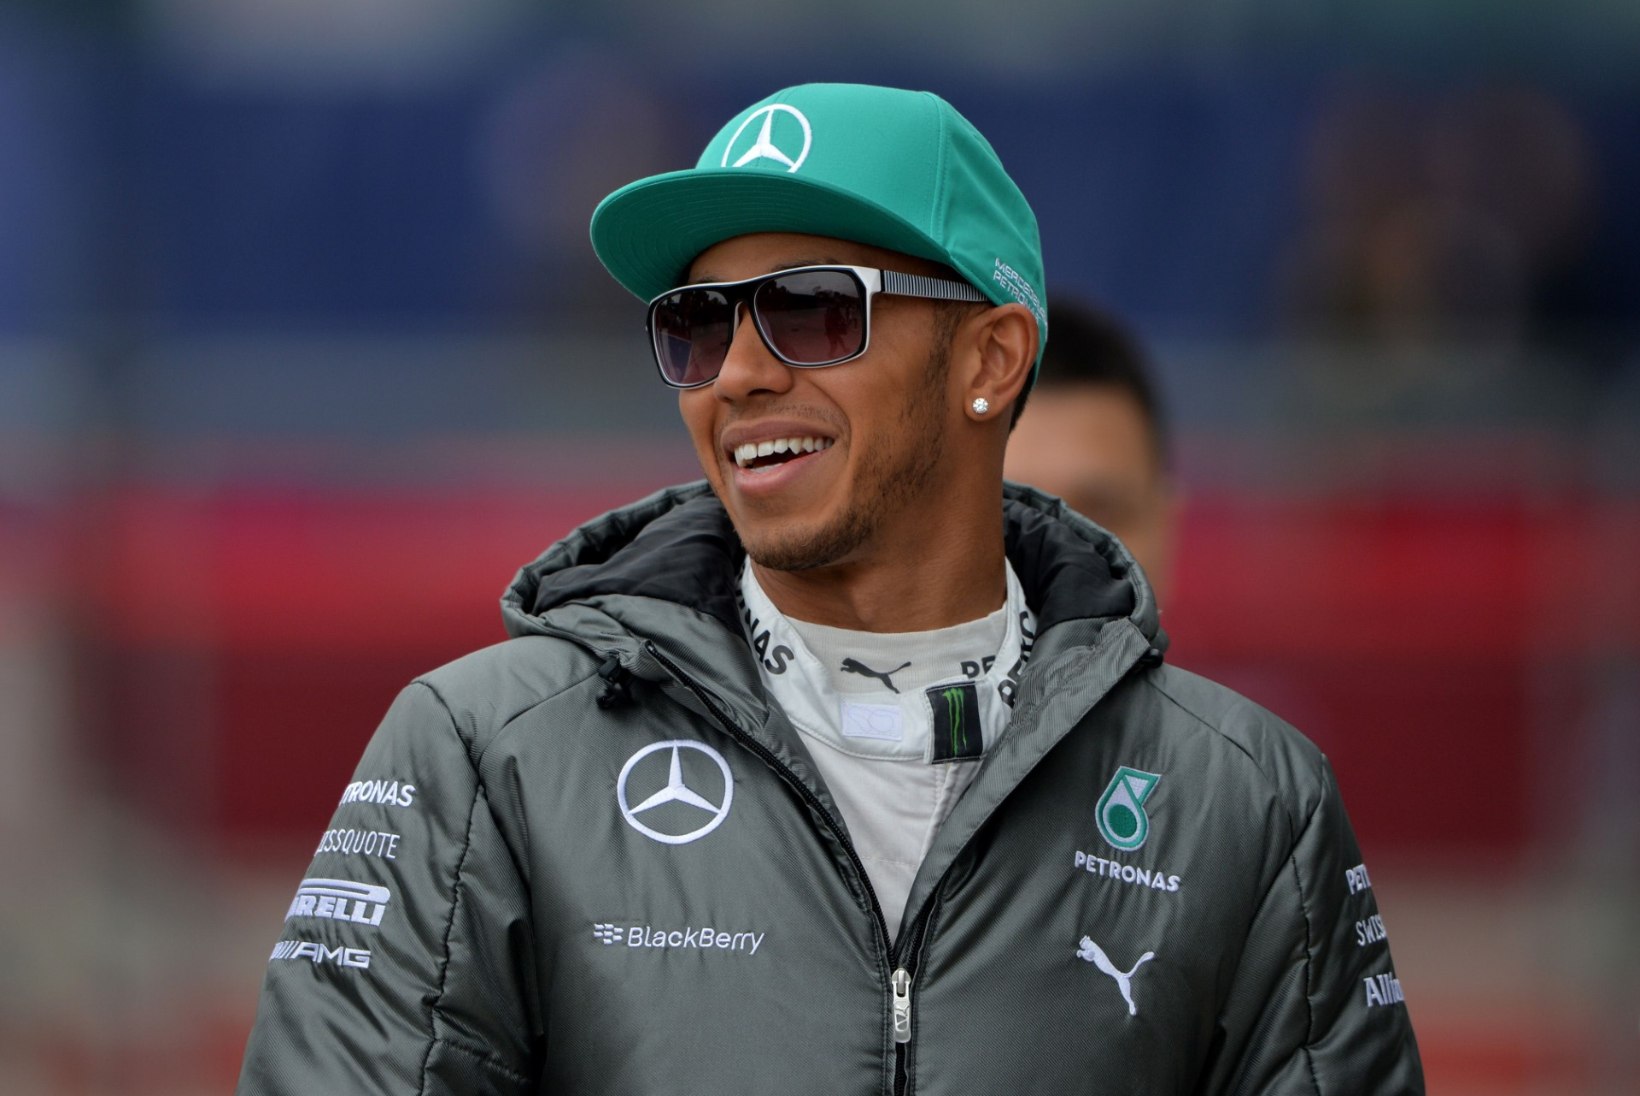 Hiina GP ajasõidu võitis ülivõimsalt Lewis Hamilton